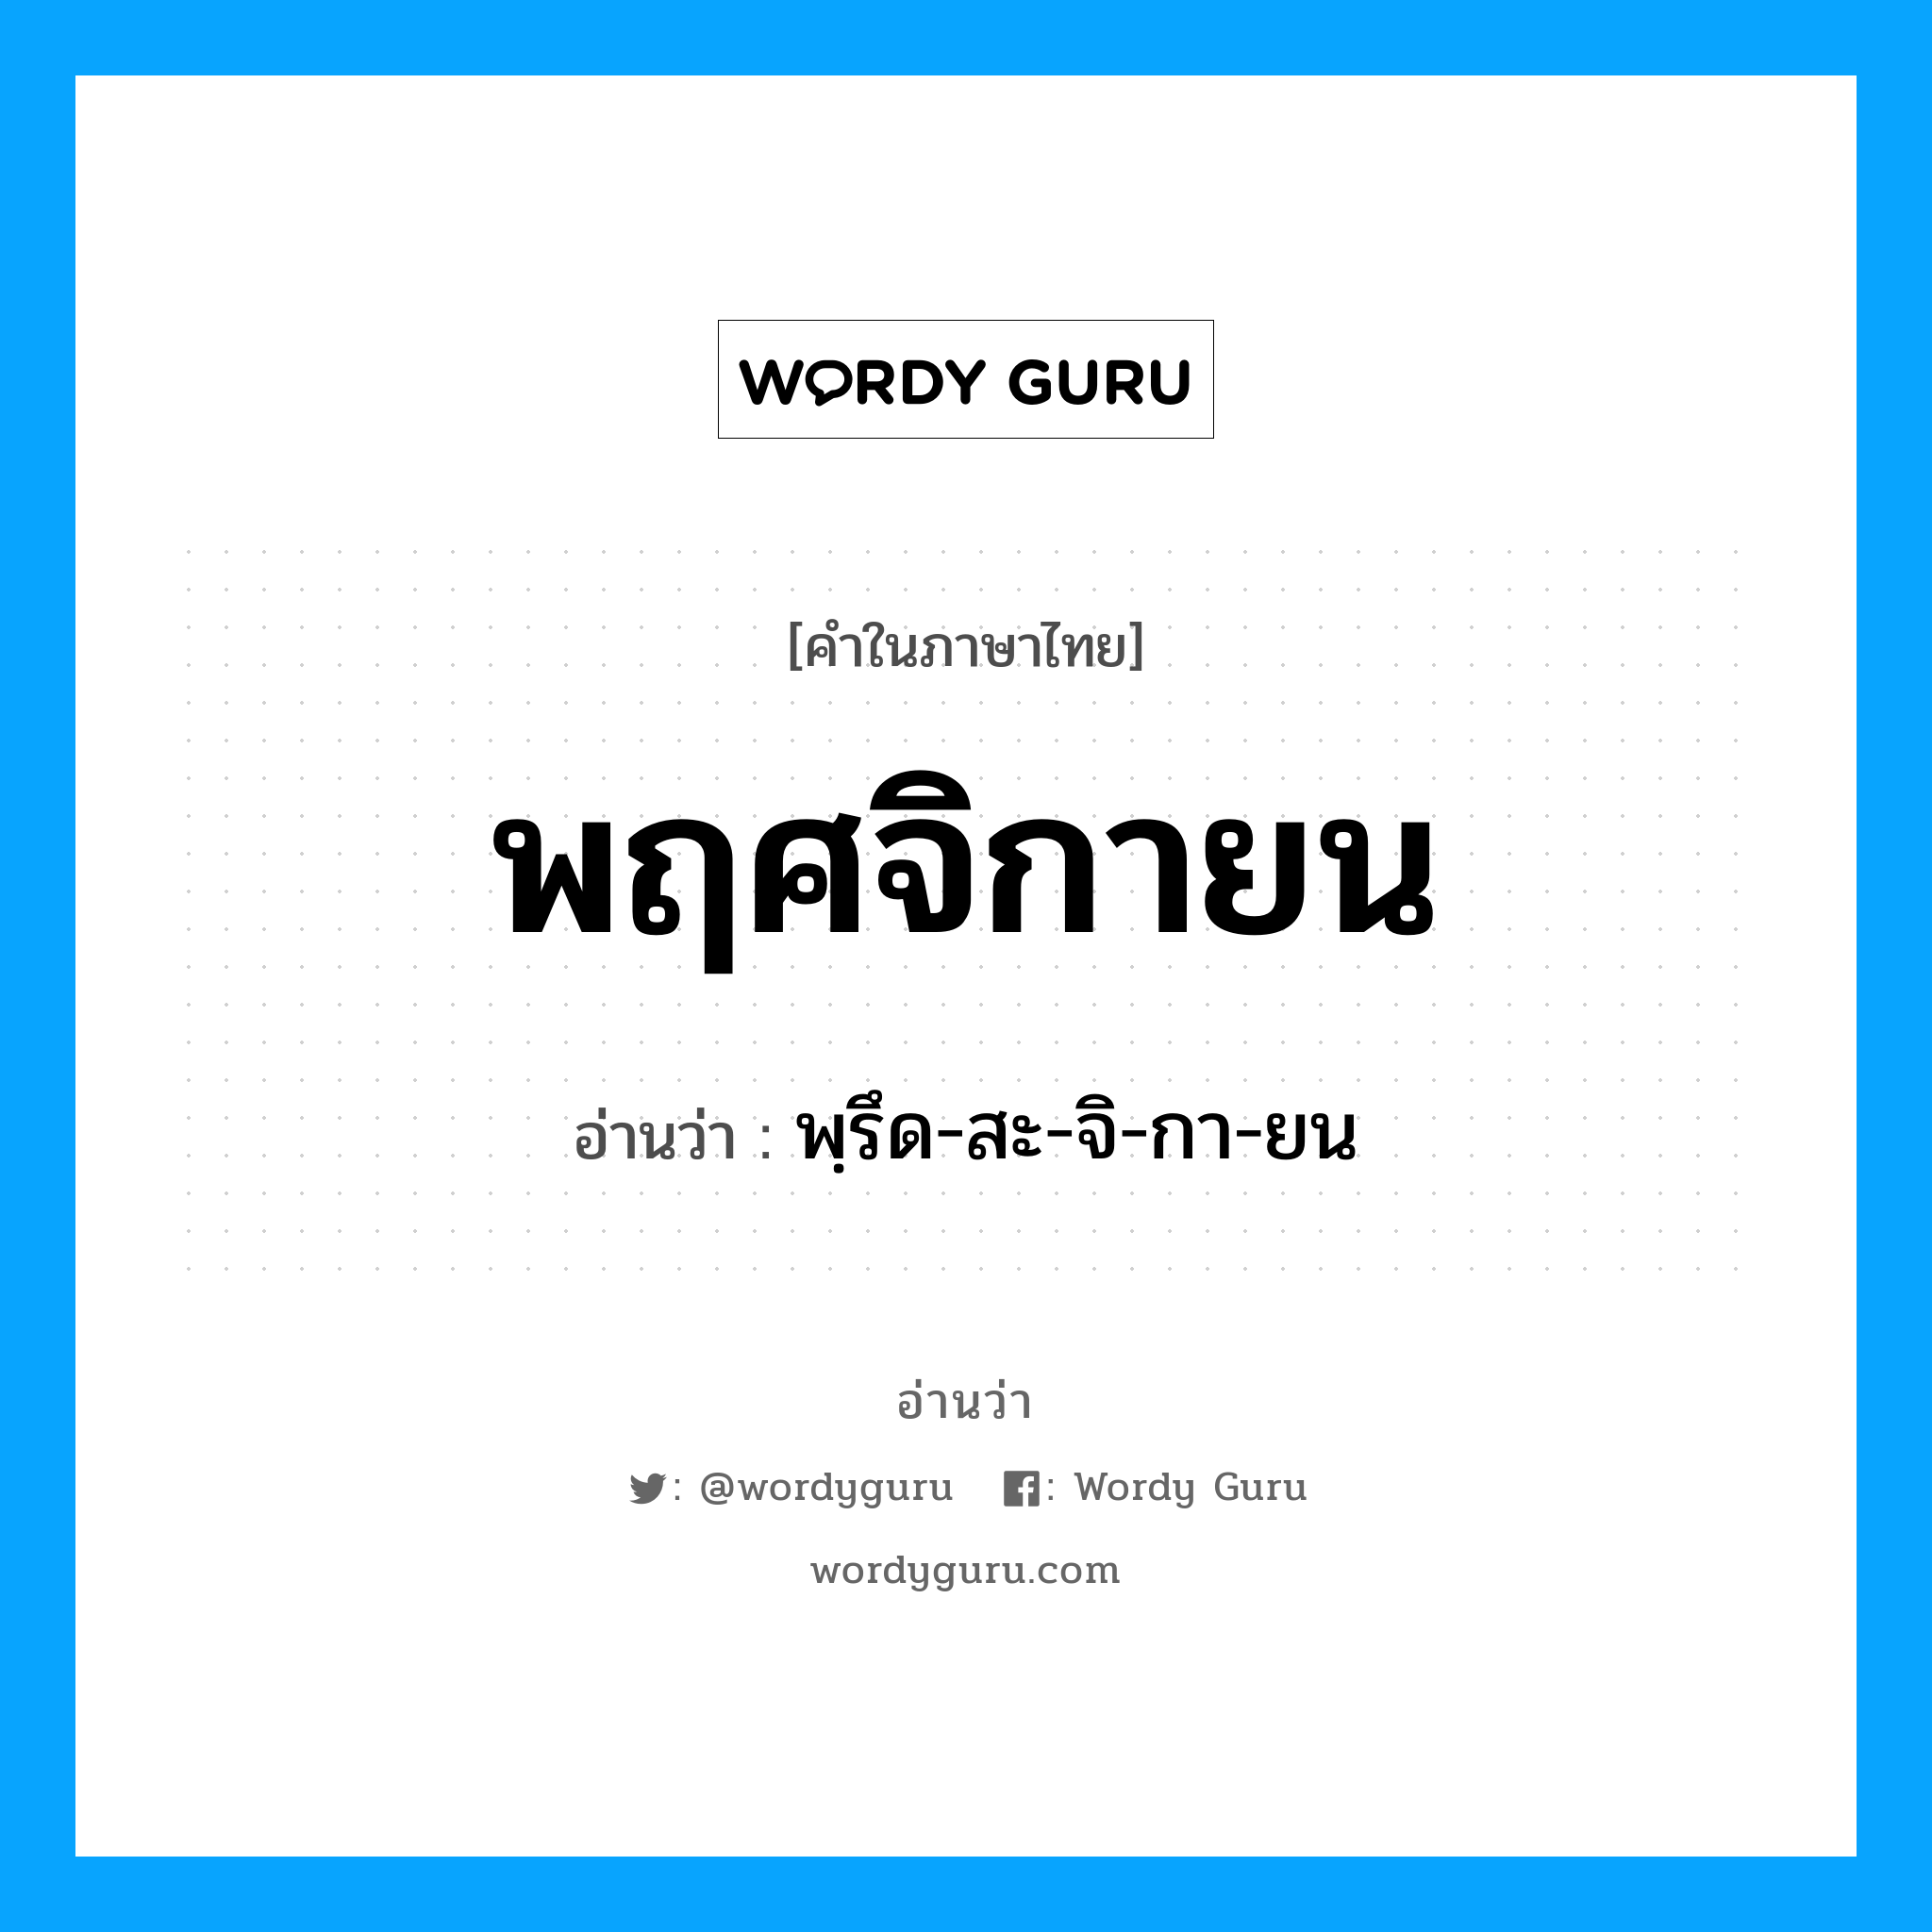 พฺรึด-สะ-จิ-กา-ยน เป็นคำอ่านของคำไหน?, คำในภาษาไทย พฺรึด-สะ-จิ-กา-ยน อ่านว่า พฤศจิกายน หมวด เดือน หมวด เดือน